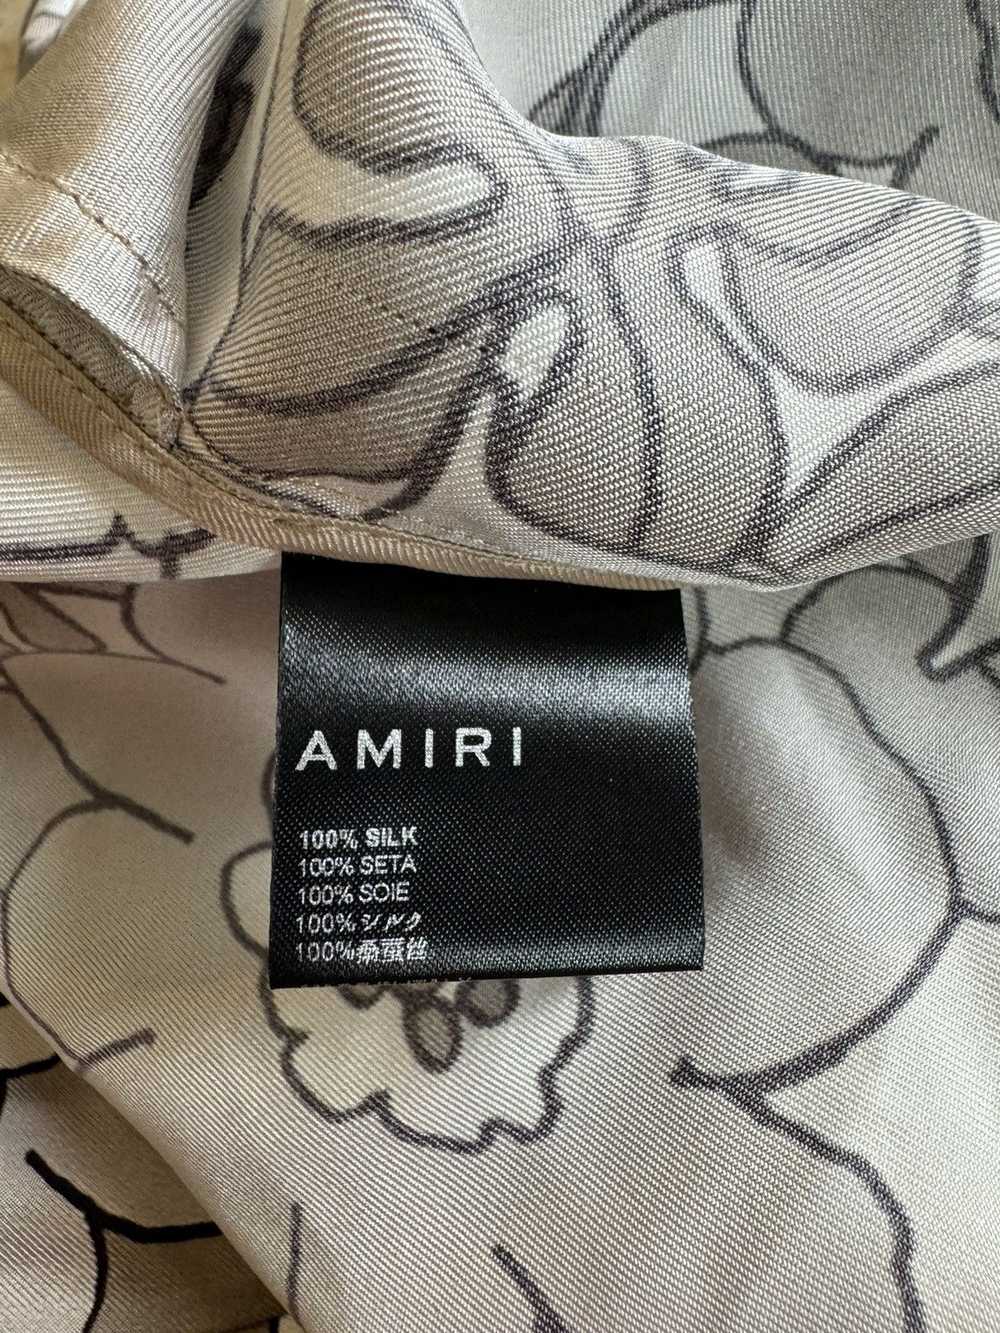 Amiri Amiri Floral Shorts size large - image 7